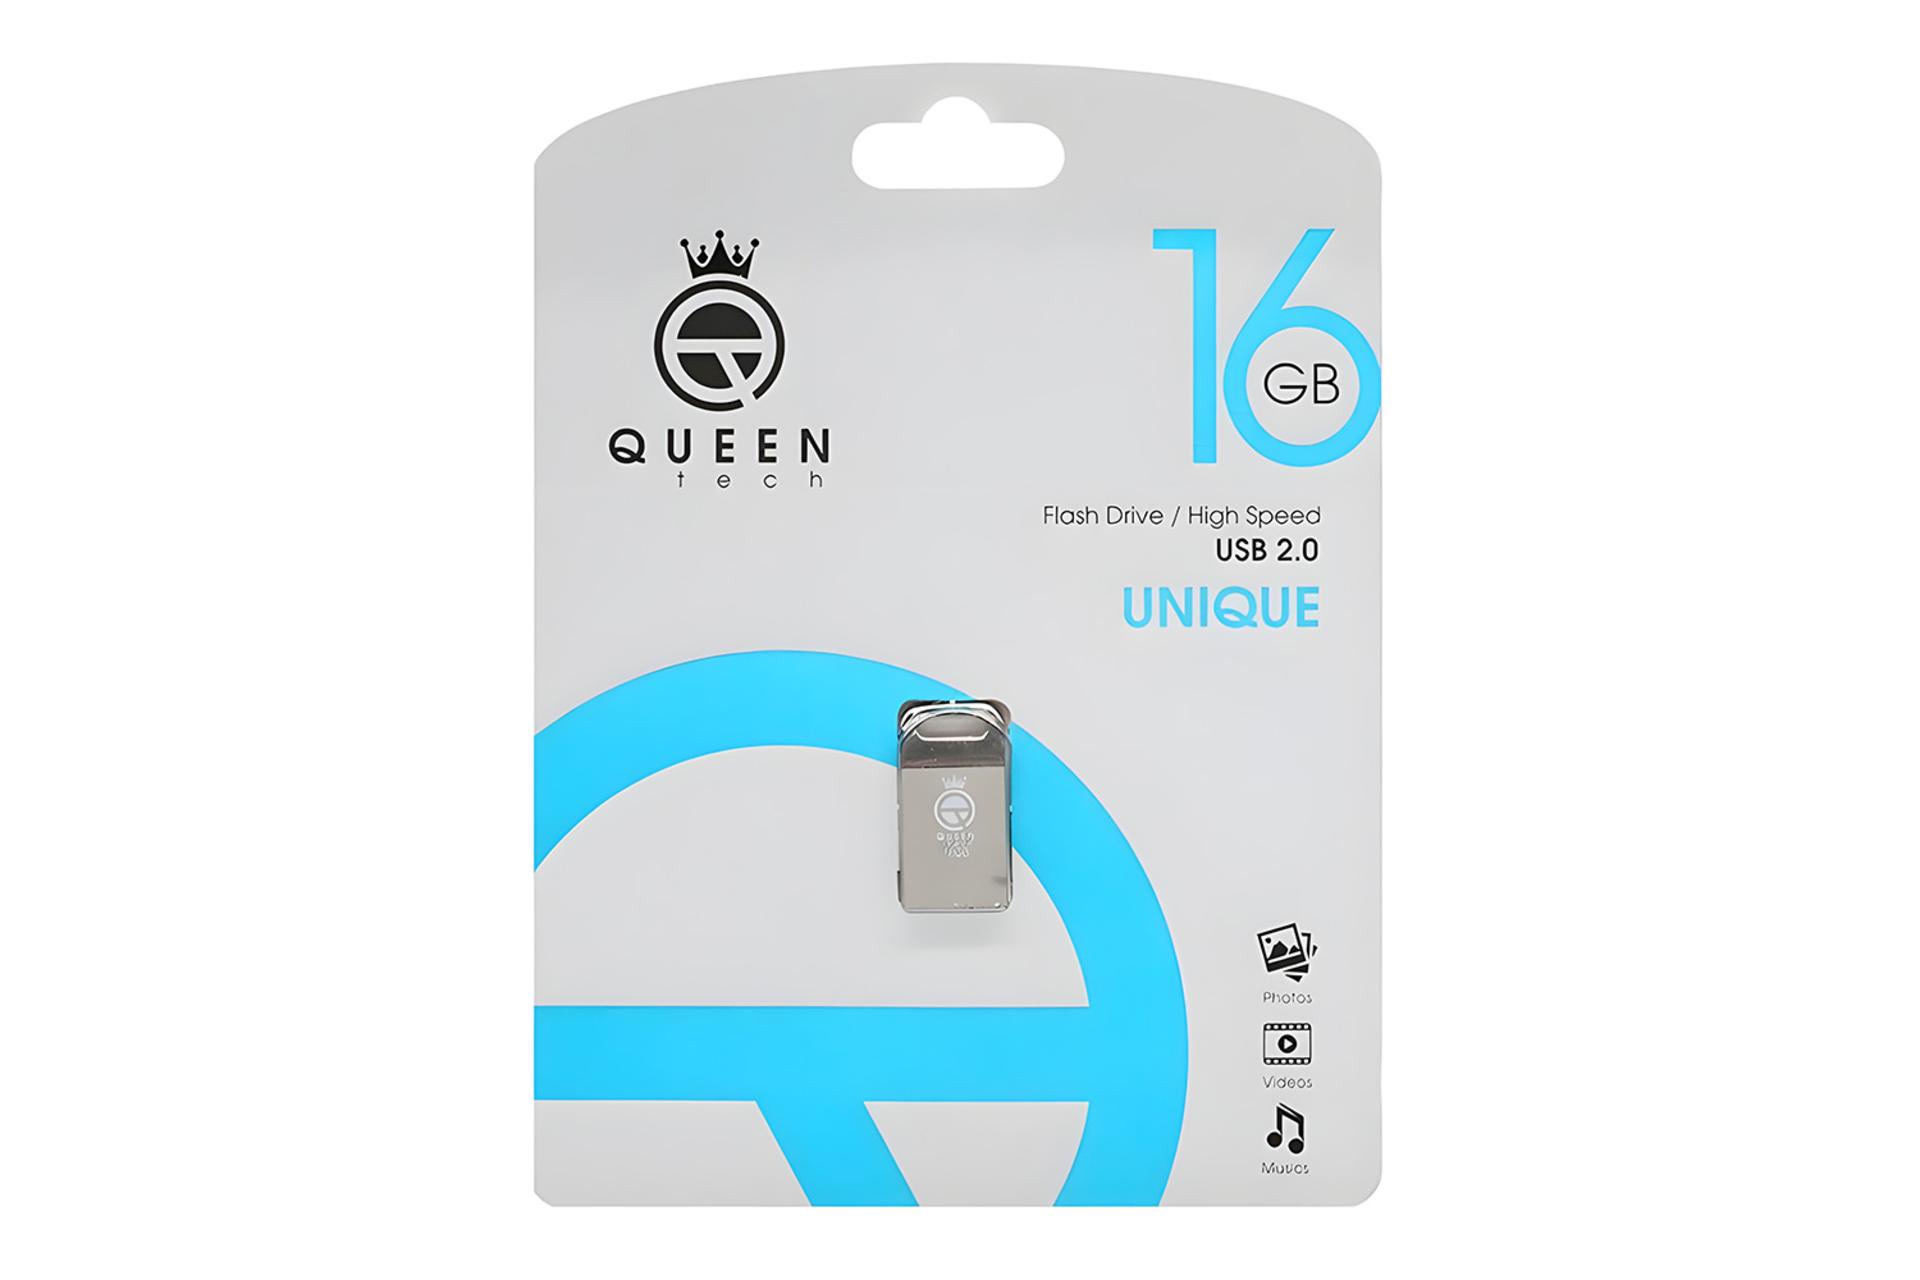 جعبه فلش مموری کوئین تک Queen Tech UNIQUE 16GB USB 2.0